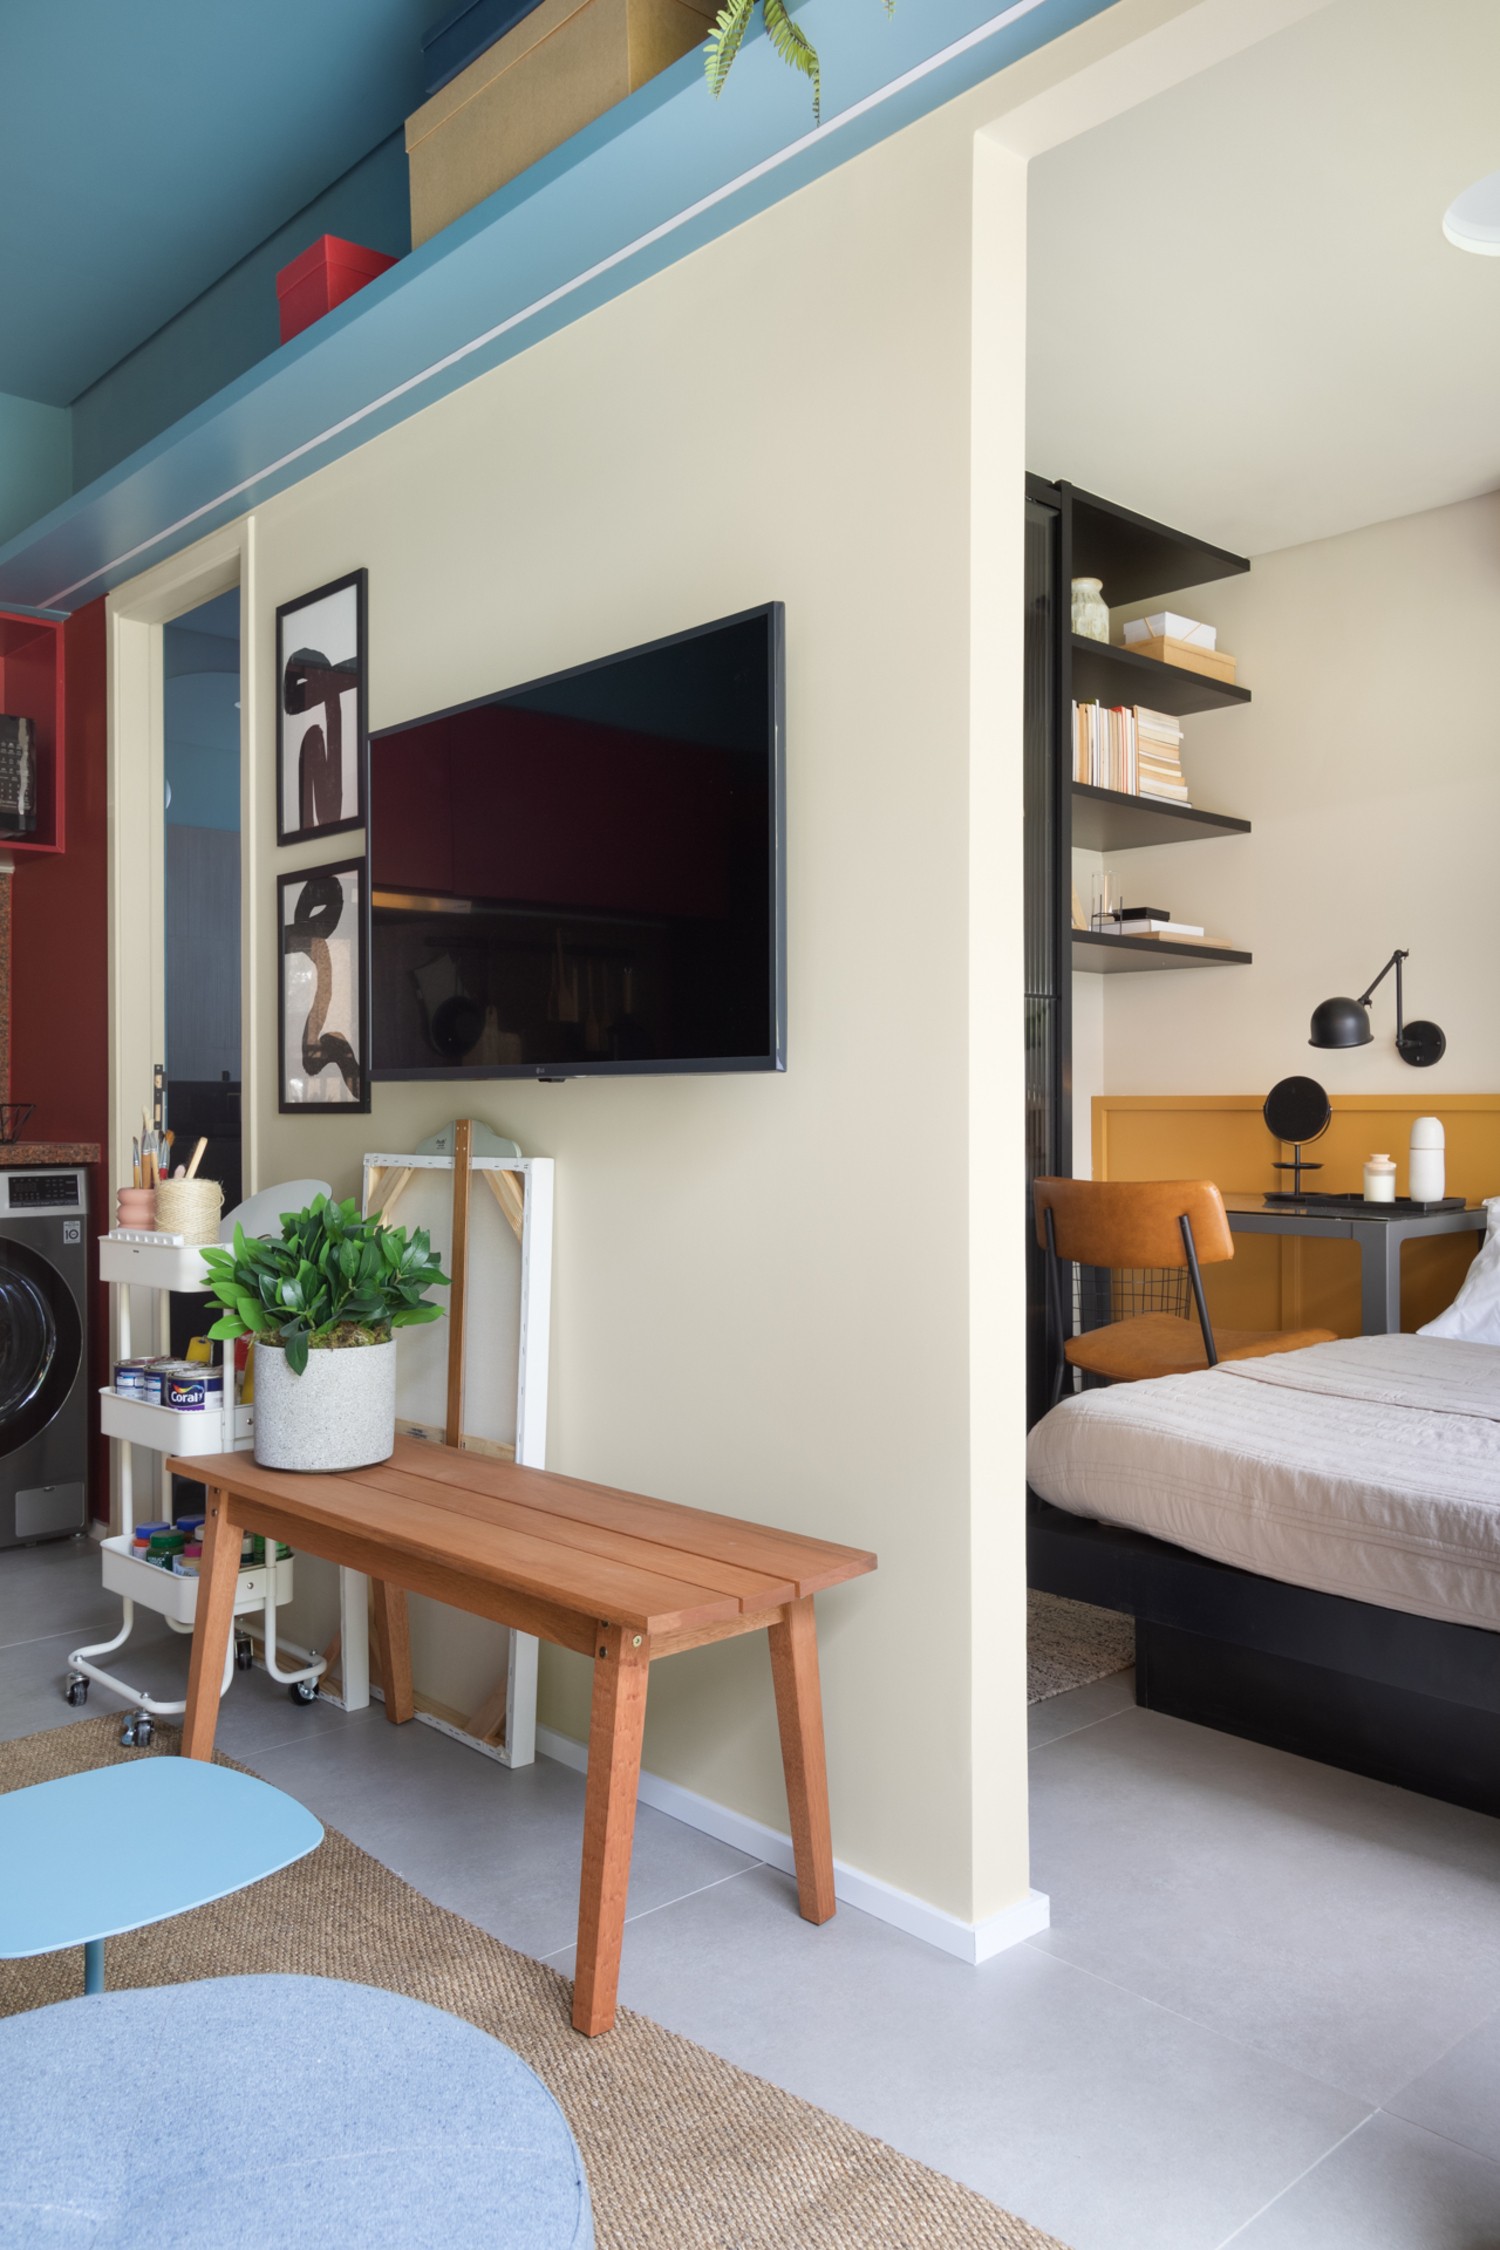 QUARTO | A transição do estar para o quarto é feita através da parede que abriga a TV e os quartos (Foto: Divulgação / Alexandre Disaro)